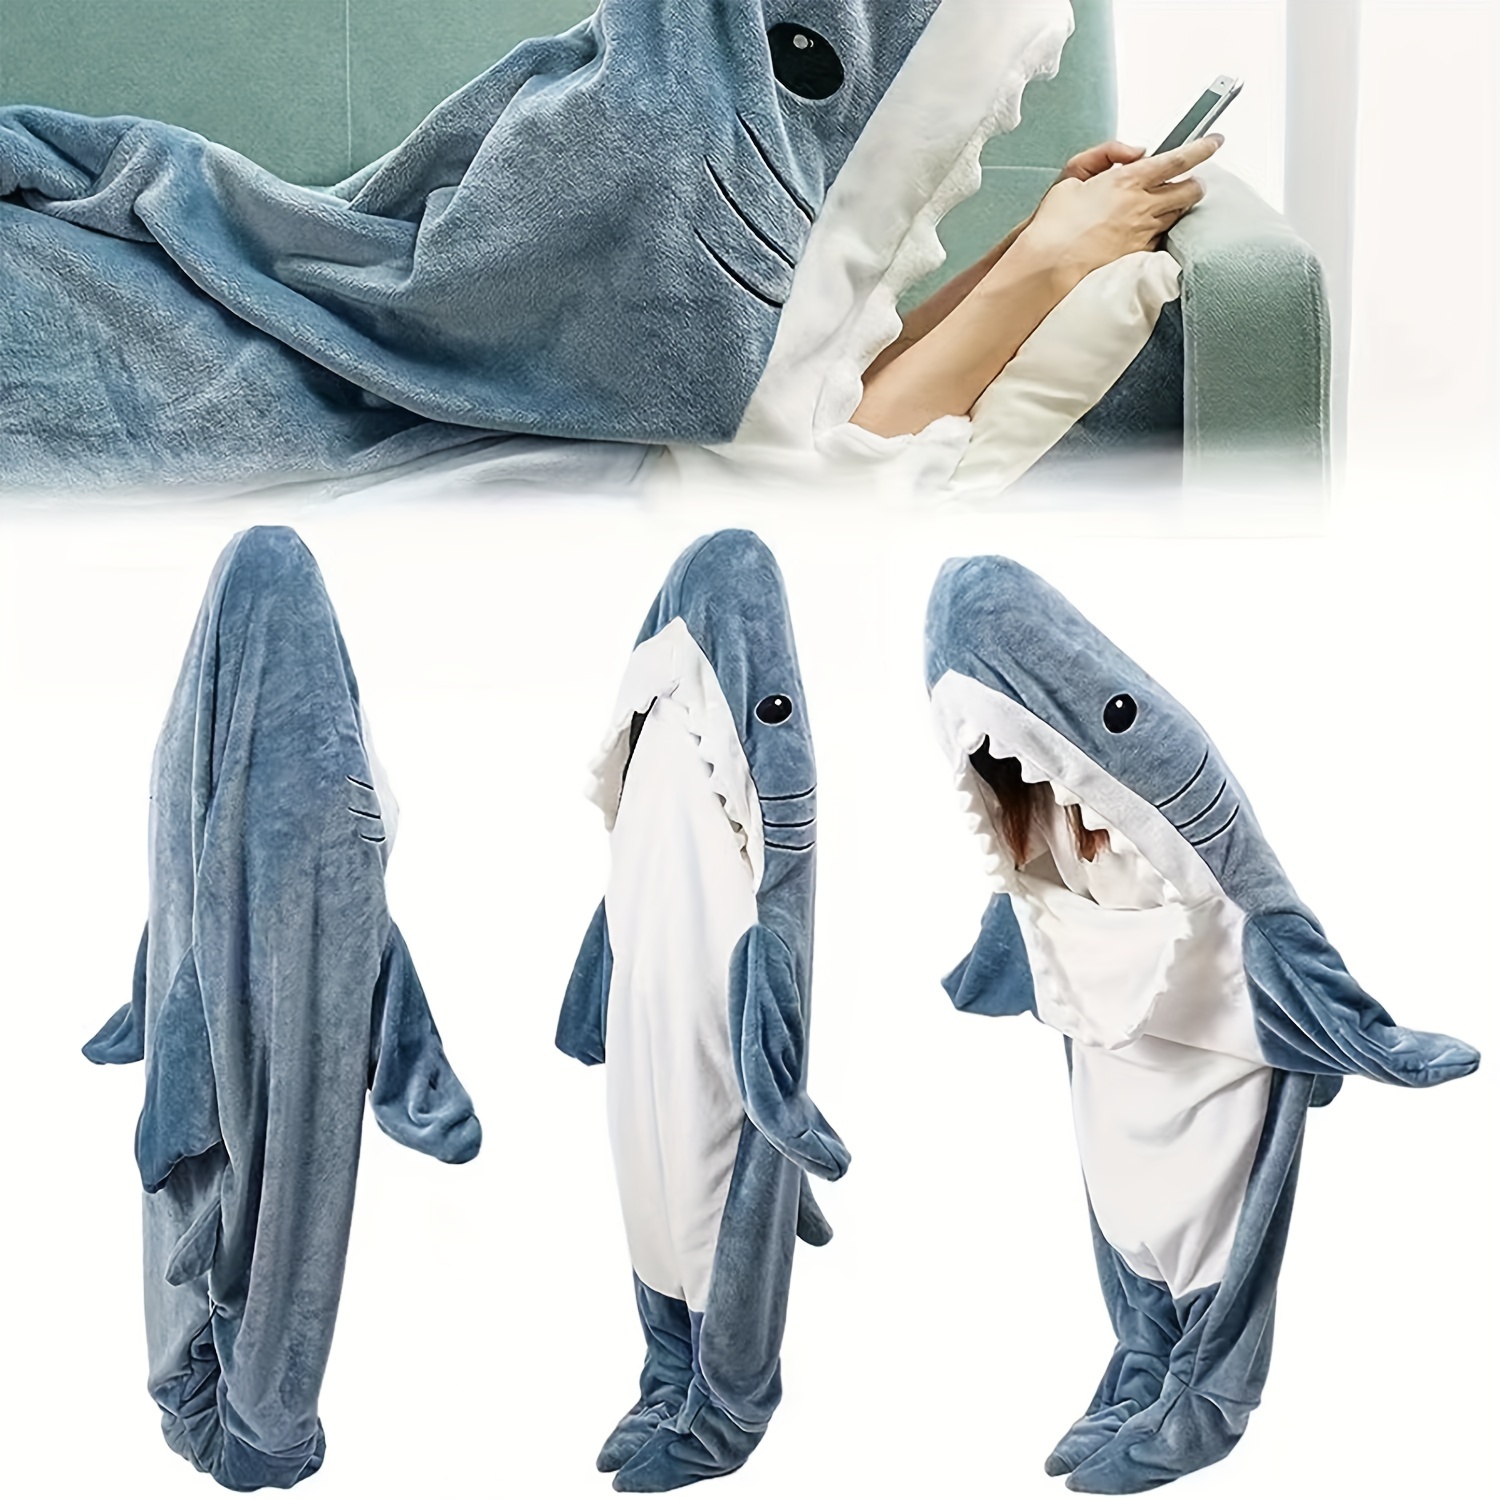 pijamas disfraz en forma de tiburón para adulto, ideal para Cosplay